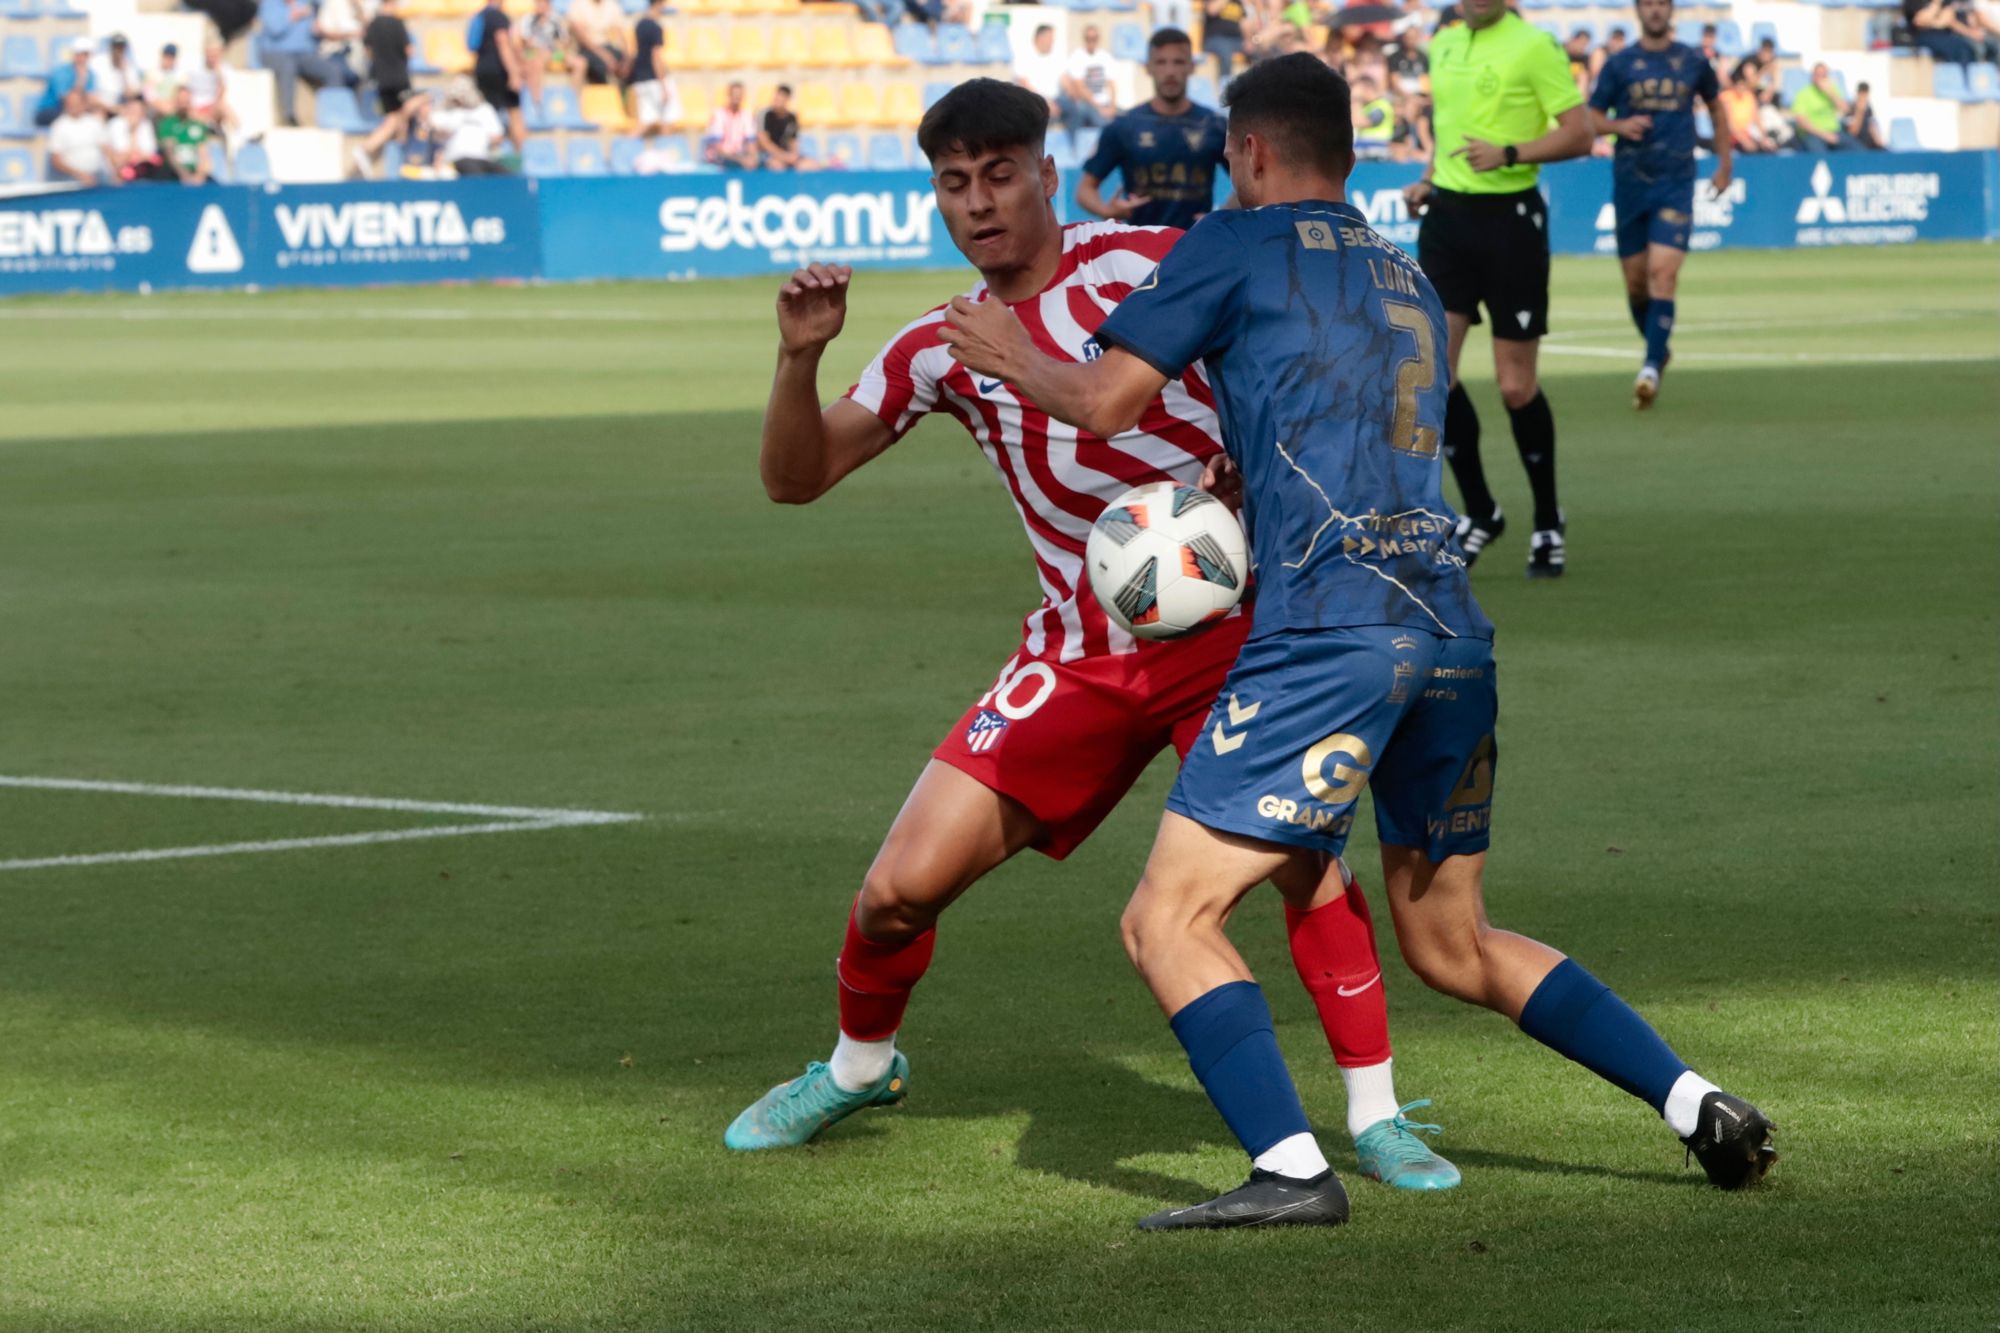 UCAM Murcia-Atlético de Madrid B: Empate en la ida de la final por el ascenso a 1ªRFEF